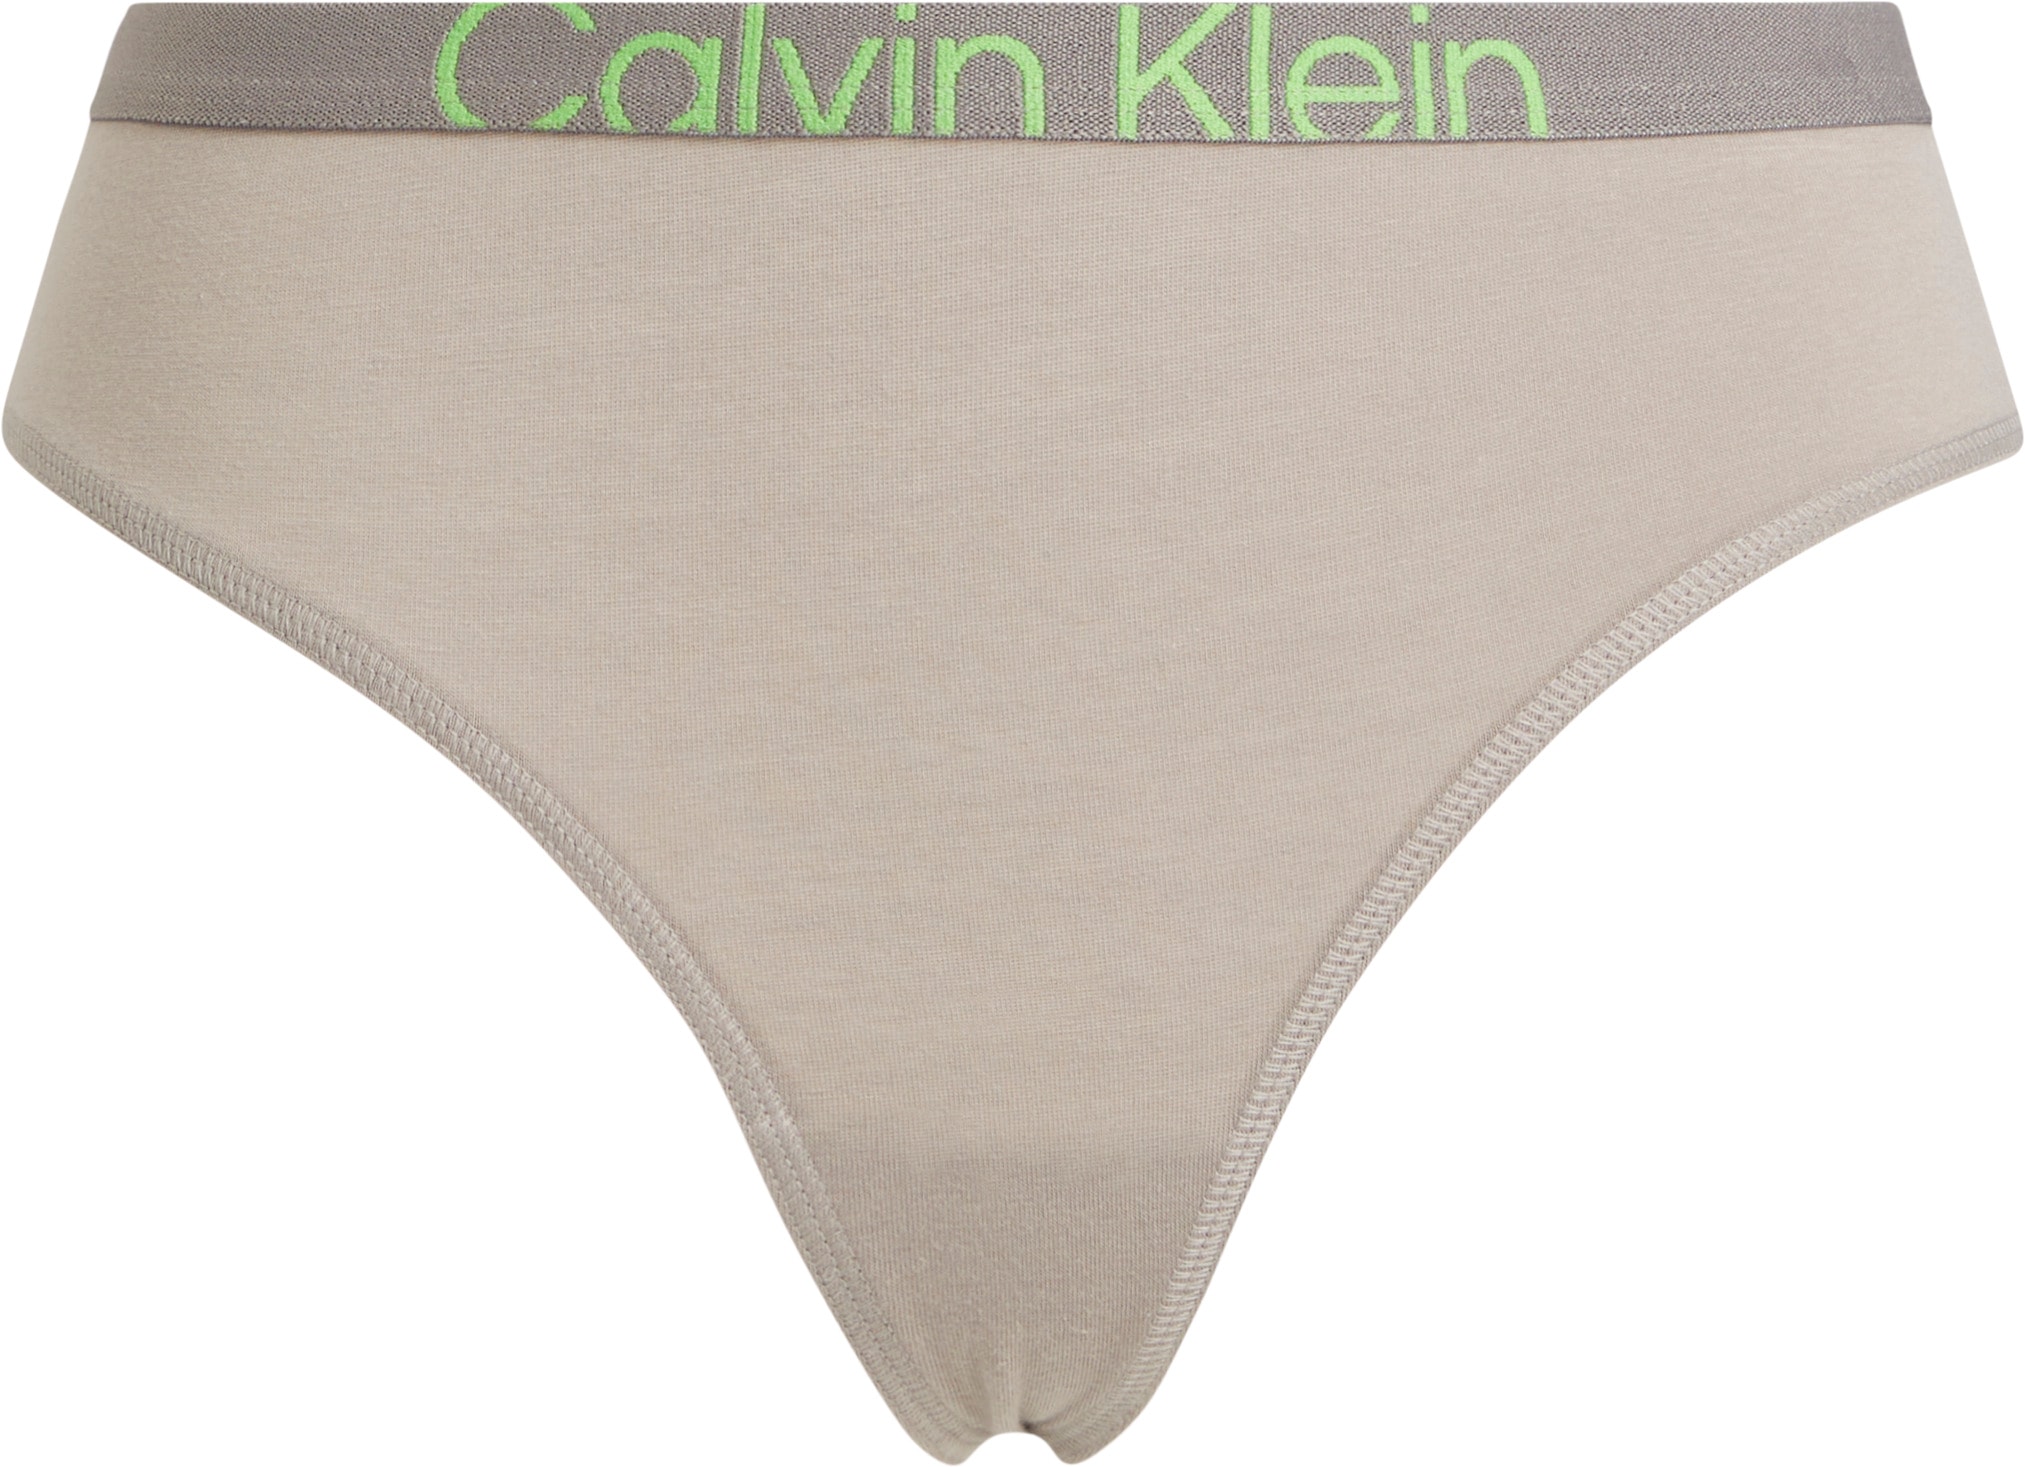 Calvin Klein T-String »MODERN THONG«, mit CK-Logo am Bund kaufen bei OTTO